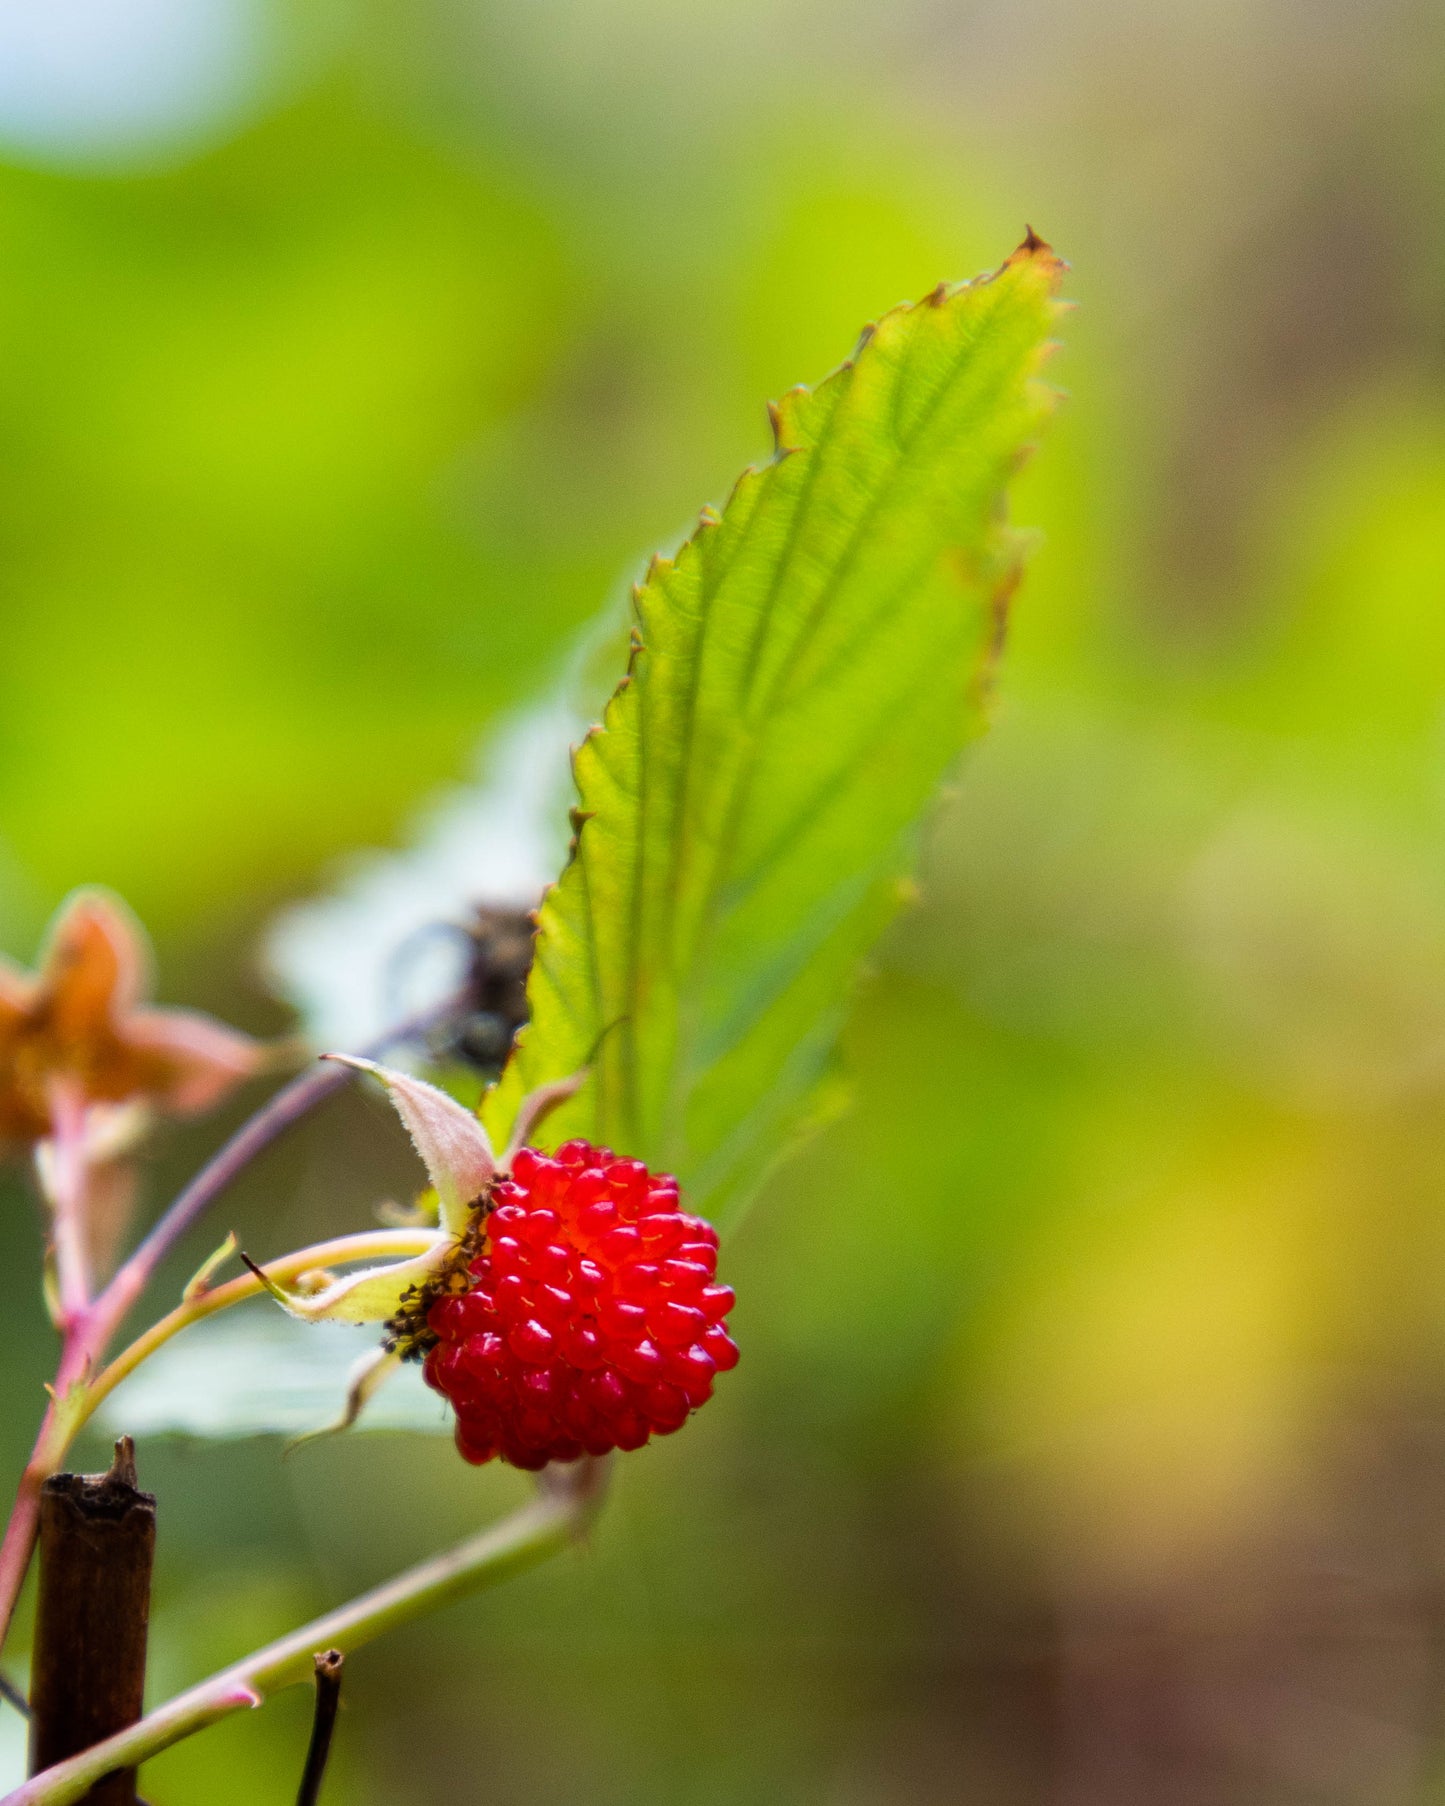 Atherton Raspberry - Rubus Probus